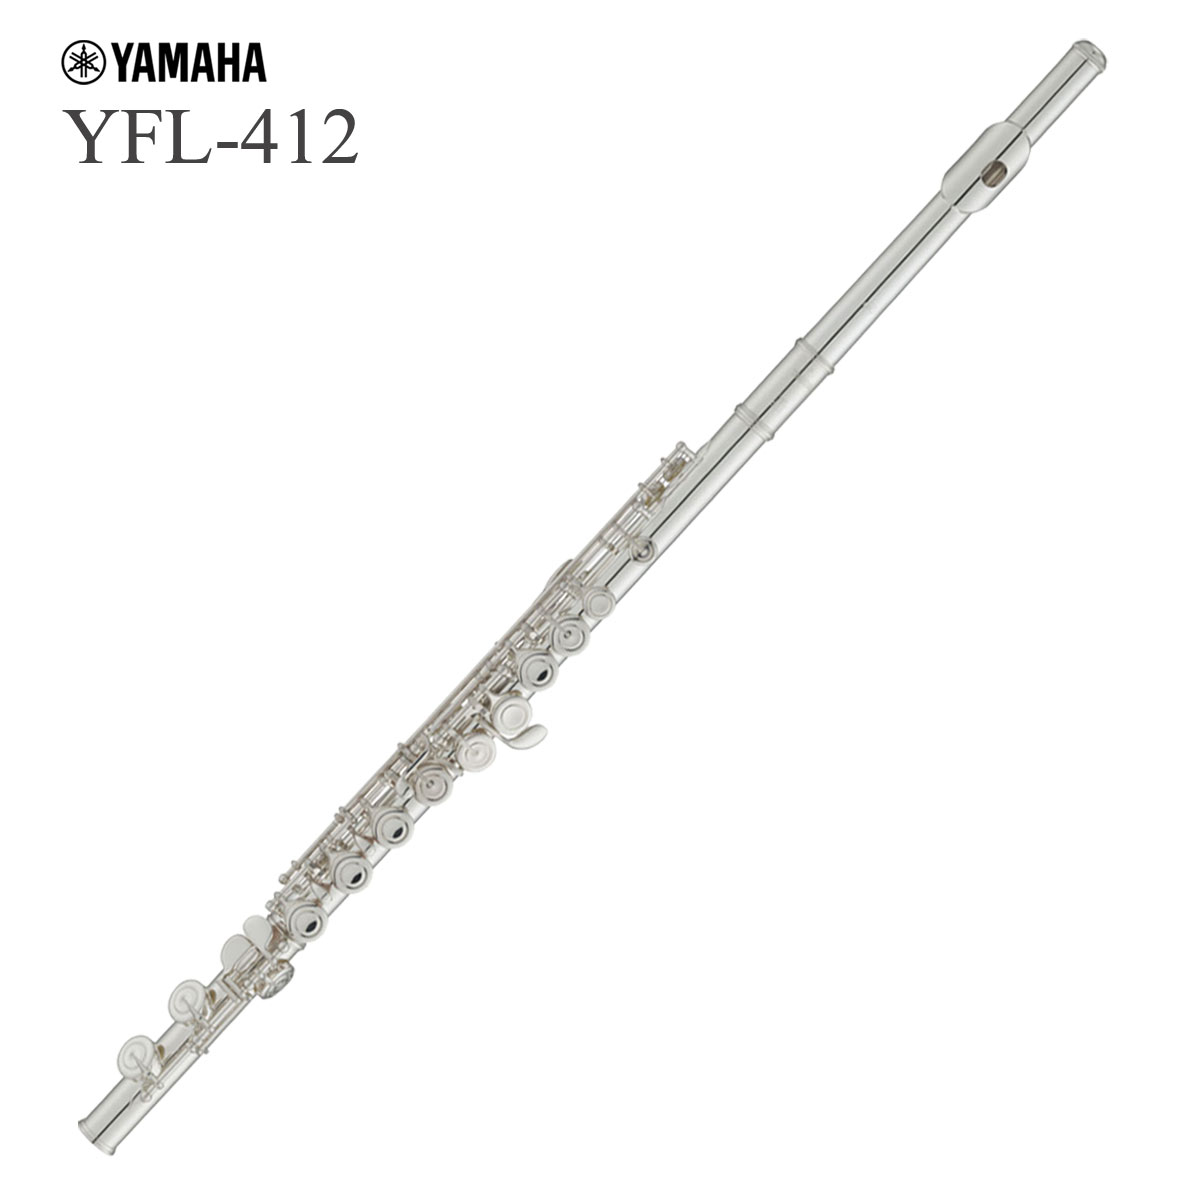 YAMAHA / YFL-412 ヤマハ フルート スタンダード Eメカ付 管体銀製